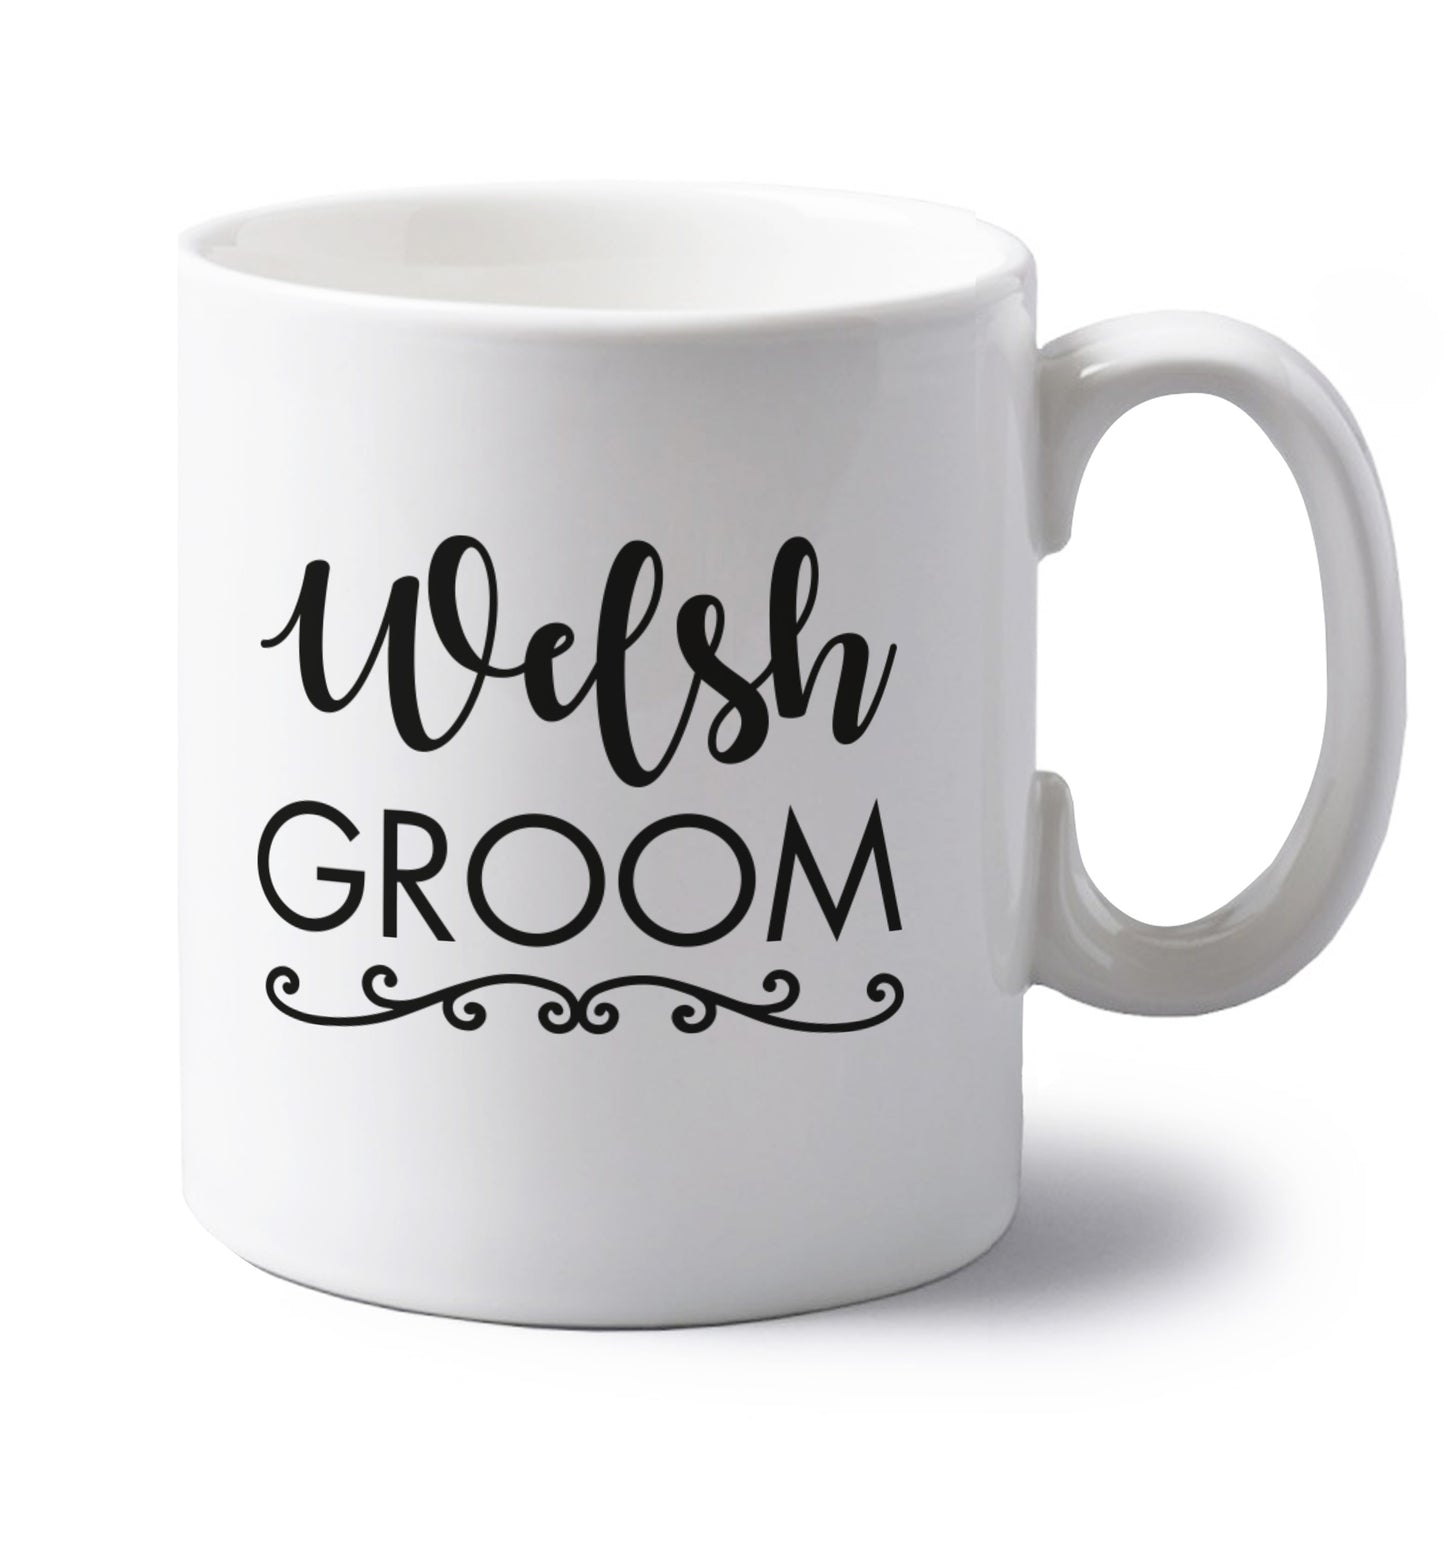 Welsh groom left handed white ceramic mug 